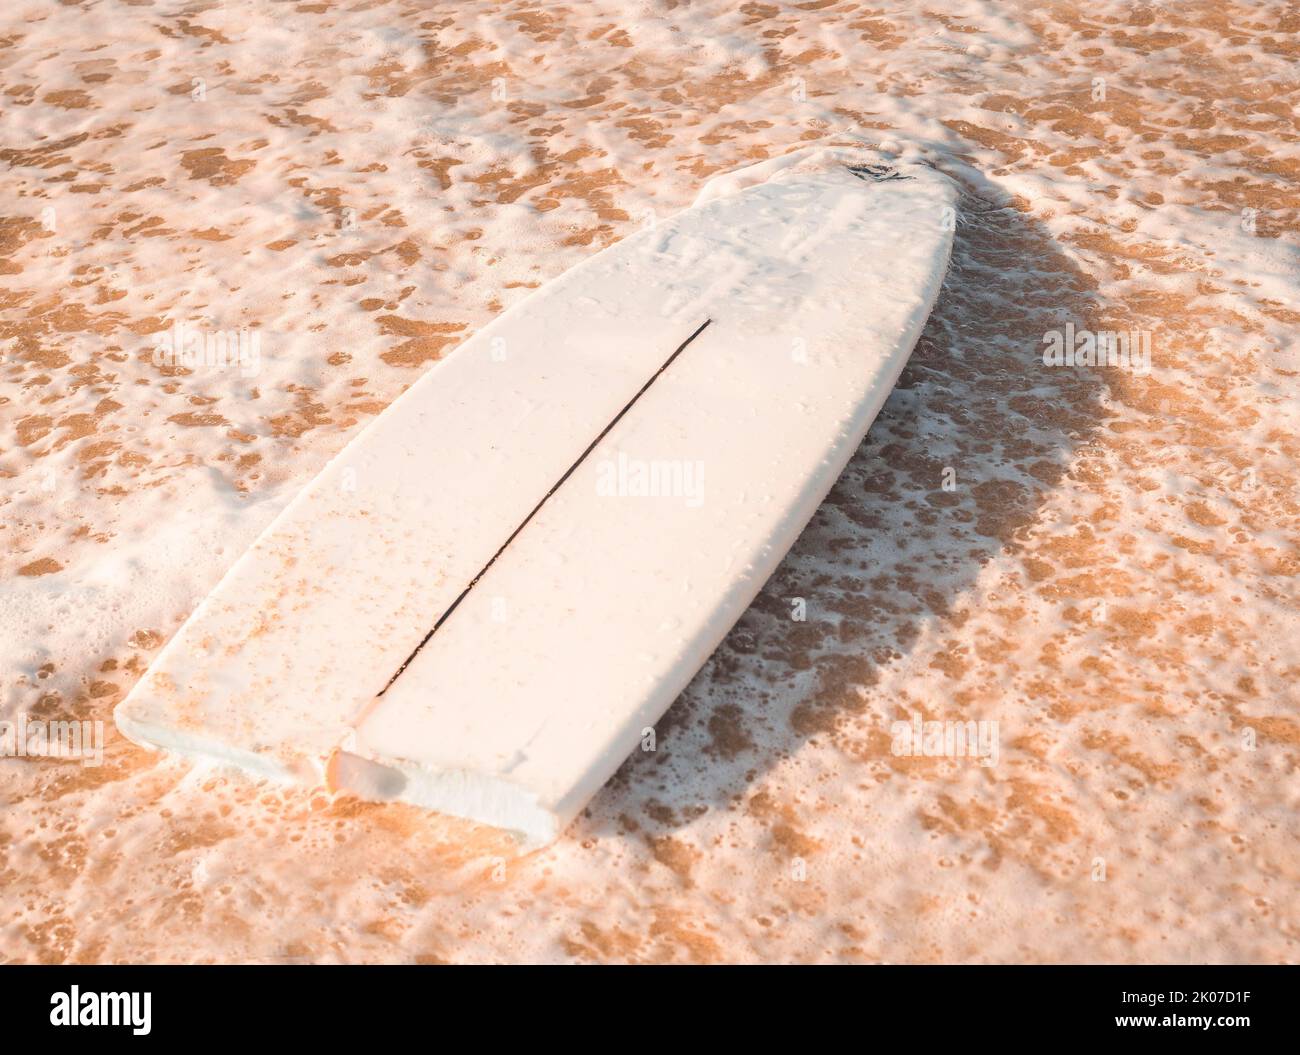 Una tavola da surf rotta sulla sabbia in spiaggia. Concetto di surf Foto Stock